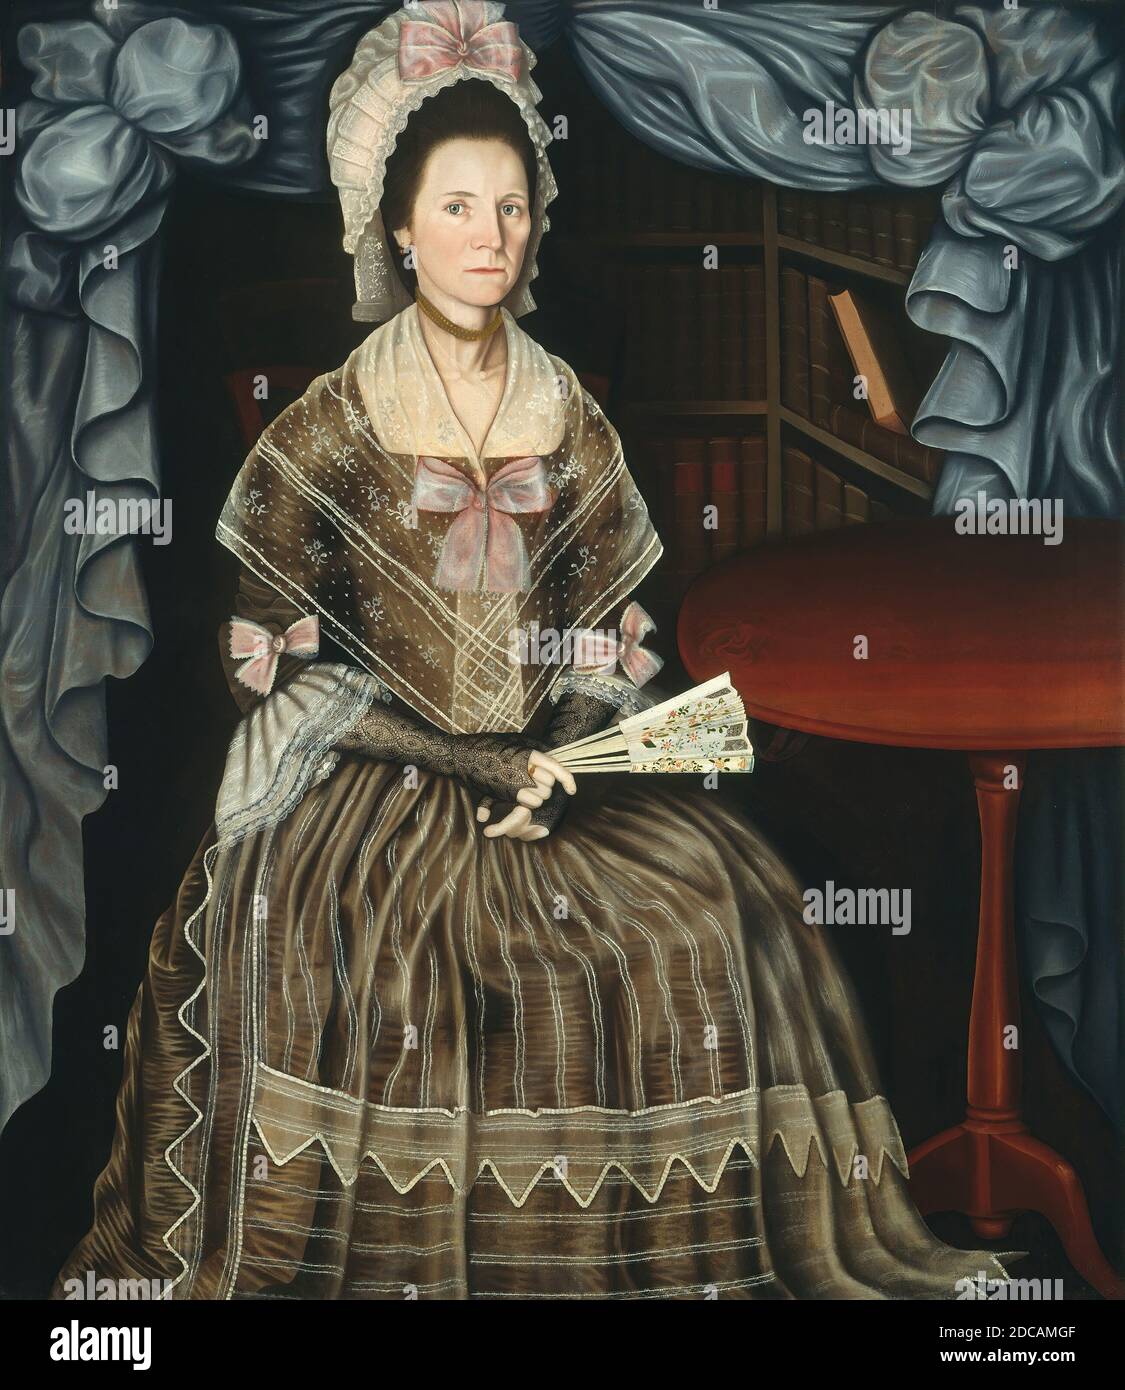 Winthrop Chandler, (artiste), cuisine américaine, 1747 - 1790, Mme Samuel Chandler, ch. 1780, huile sur toile, hors tout : 139.1 x 121.7 cm (54 3/4 x 47 15/16 in.), encadré : 155.6 x 137.8 x 5.3 cm (61 1/4 x 54 1/4 x 2 1/16 in Banque D'Images